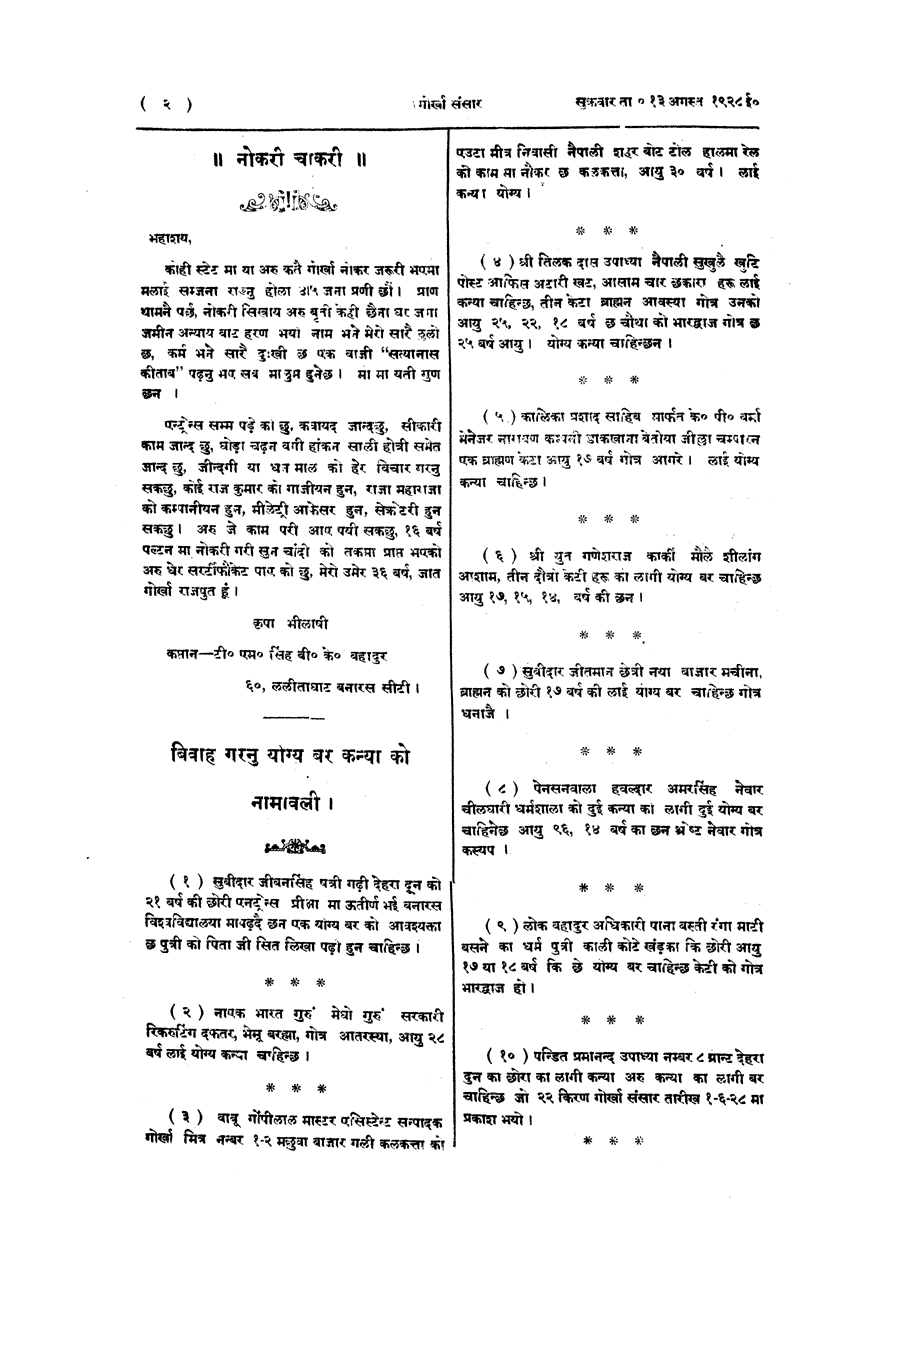 Gorkha Sansar, 31 Aug 1928, page 2